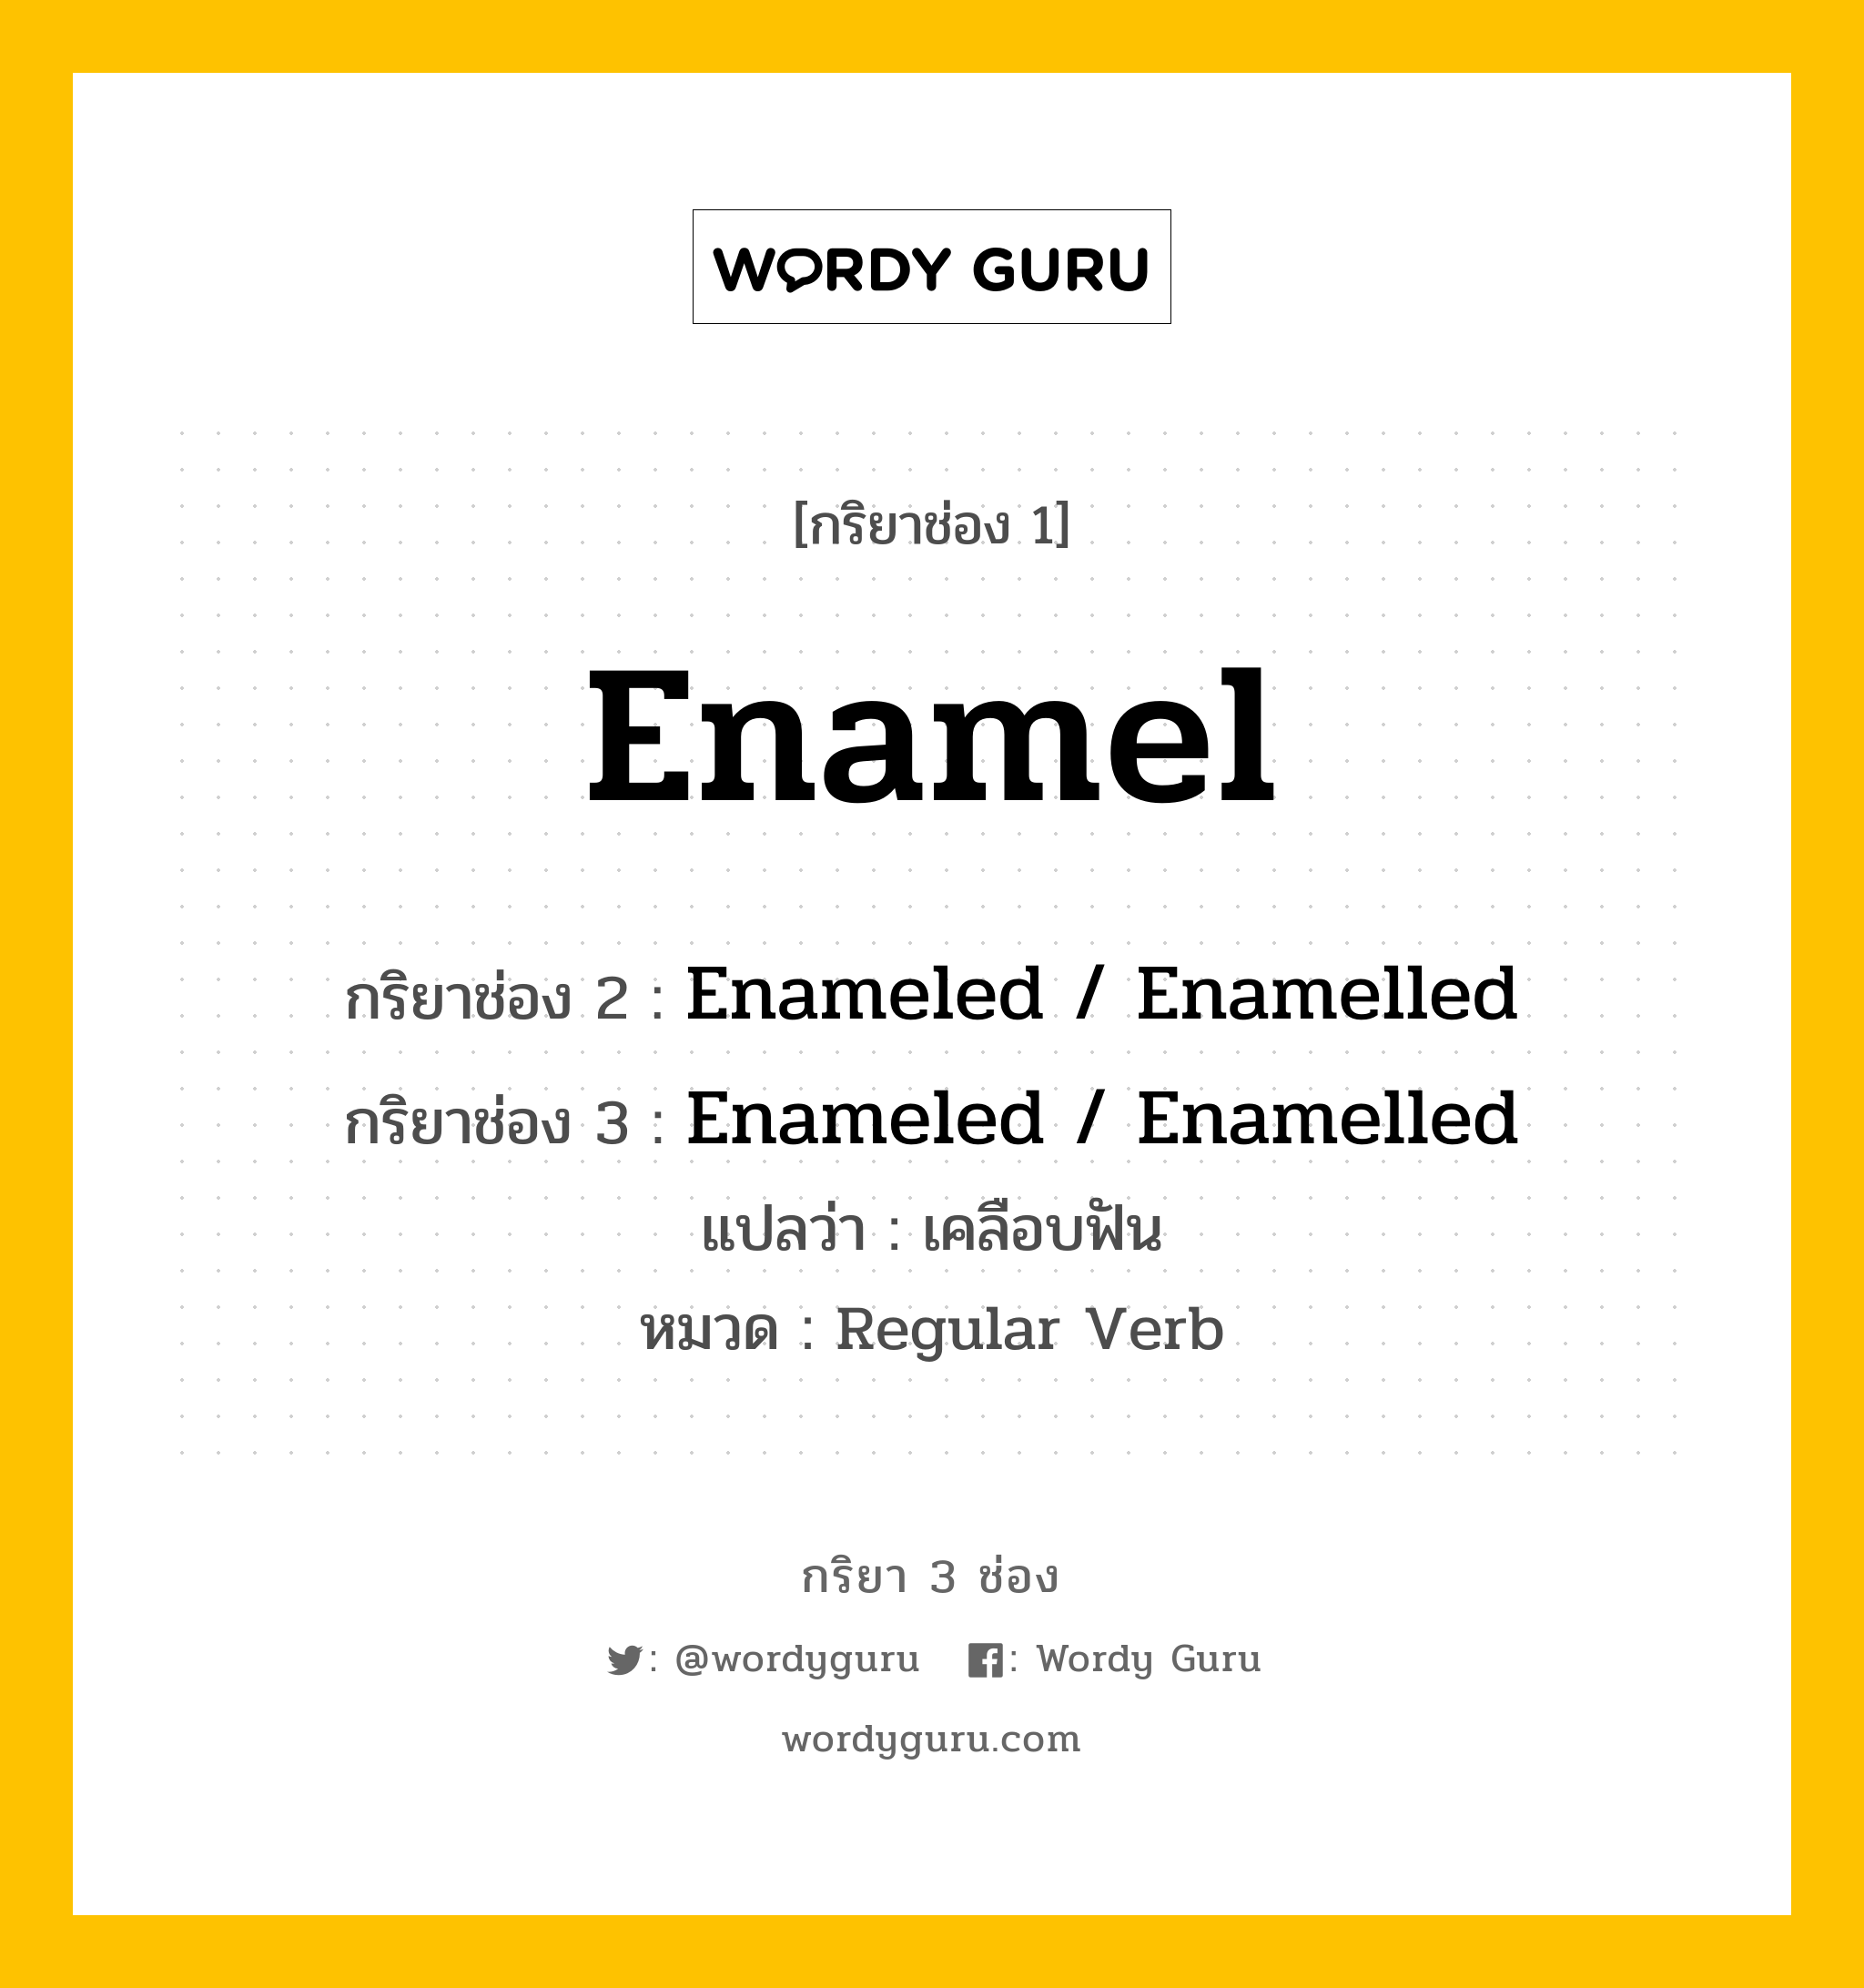 กริยา 3 ช่อง ของ Enamel คืออะไร? มาดูคำอ่าน คำแปลกันเลย, กริยาช่อง 1 Enamel กริยาช่อง 2 Enameled / Enamelled กริยาช่อง 3 Enameled / Enamelled แปลว่า เคลือบฟัน หมวด Regular Verb หมวด Regular Verb